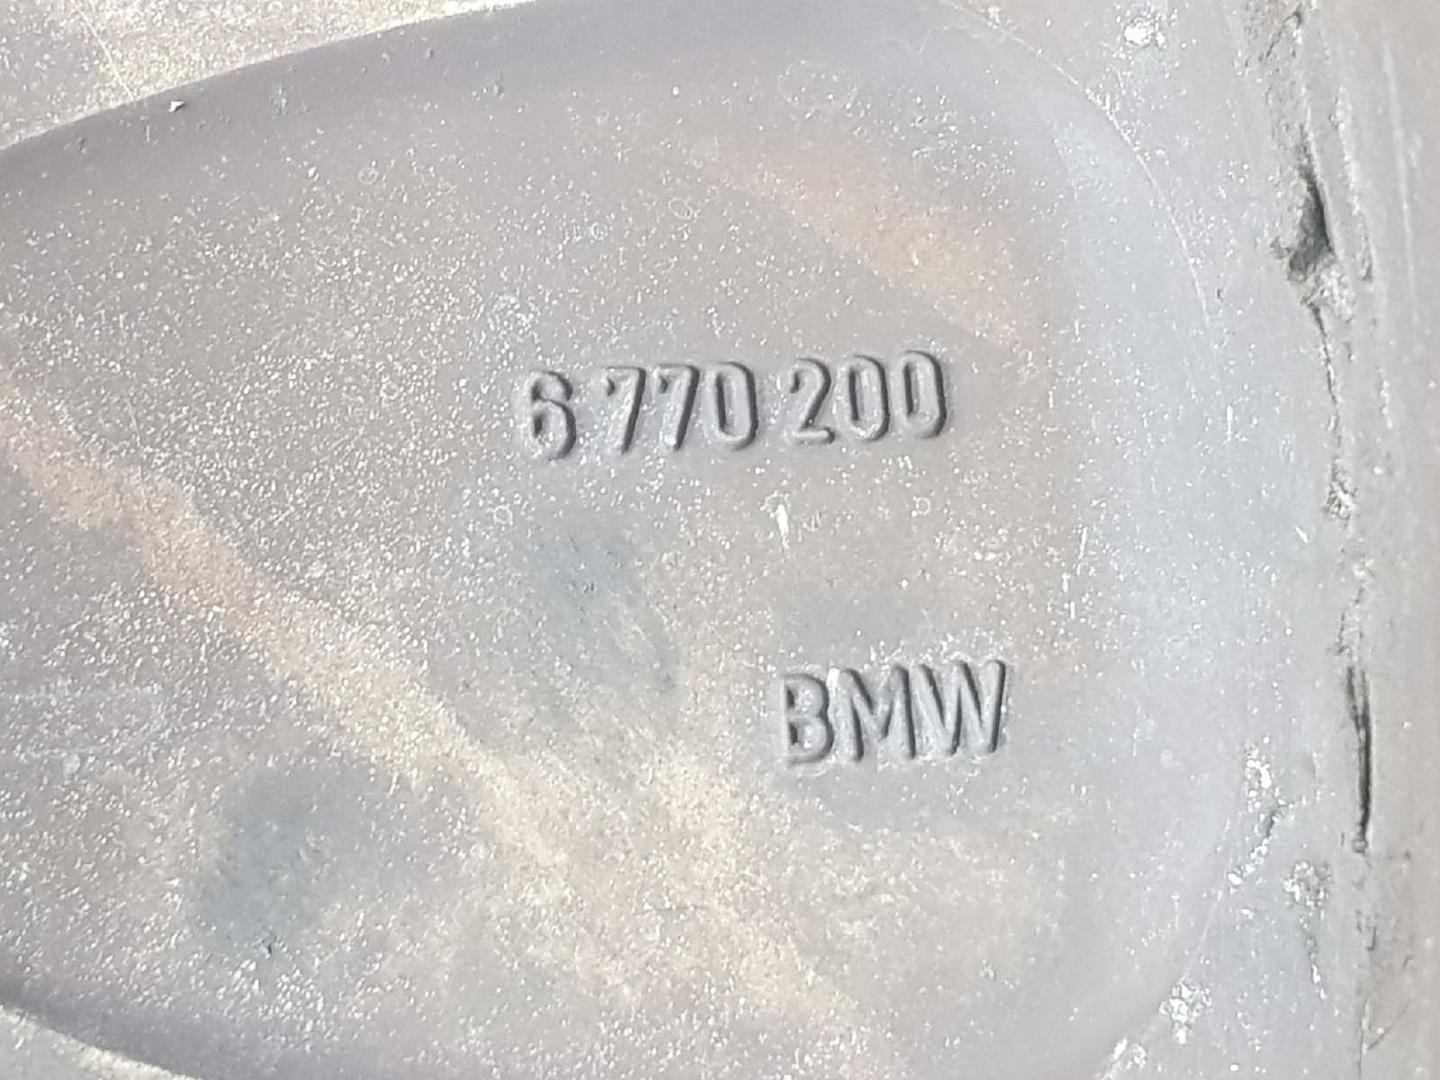 BMW X6 E71/E72 (2008-2012) Tire 6770200, 36116770200 19747079